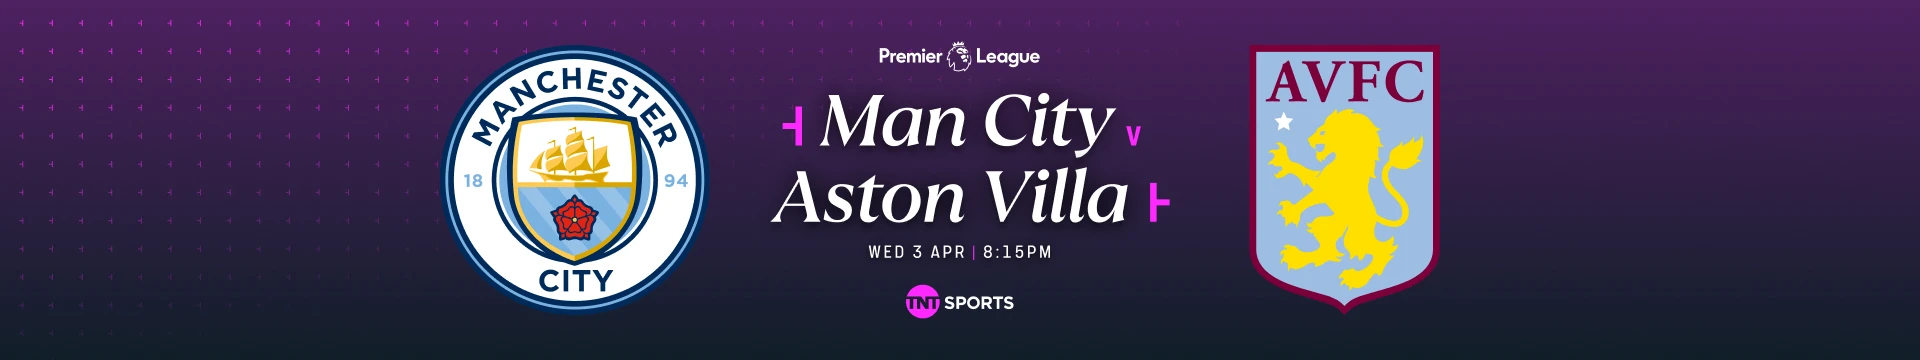 Man City v Aston Villa Wednesday 3 April at 8:15pm